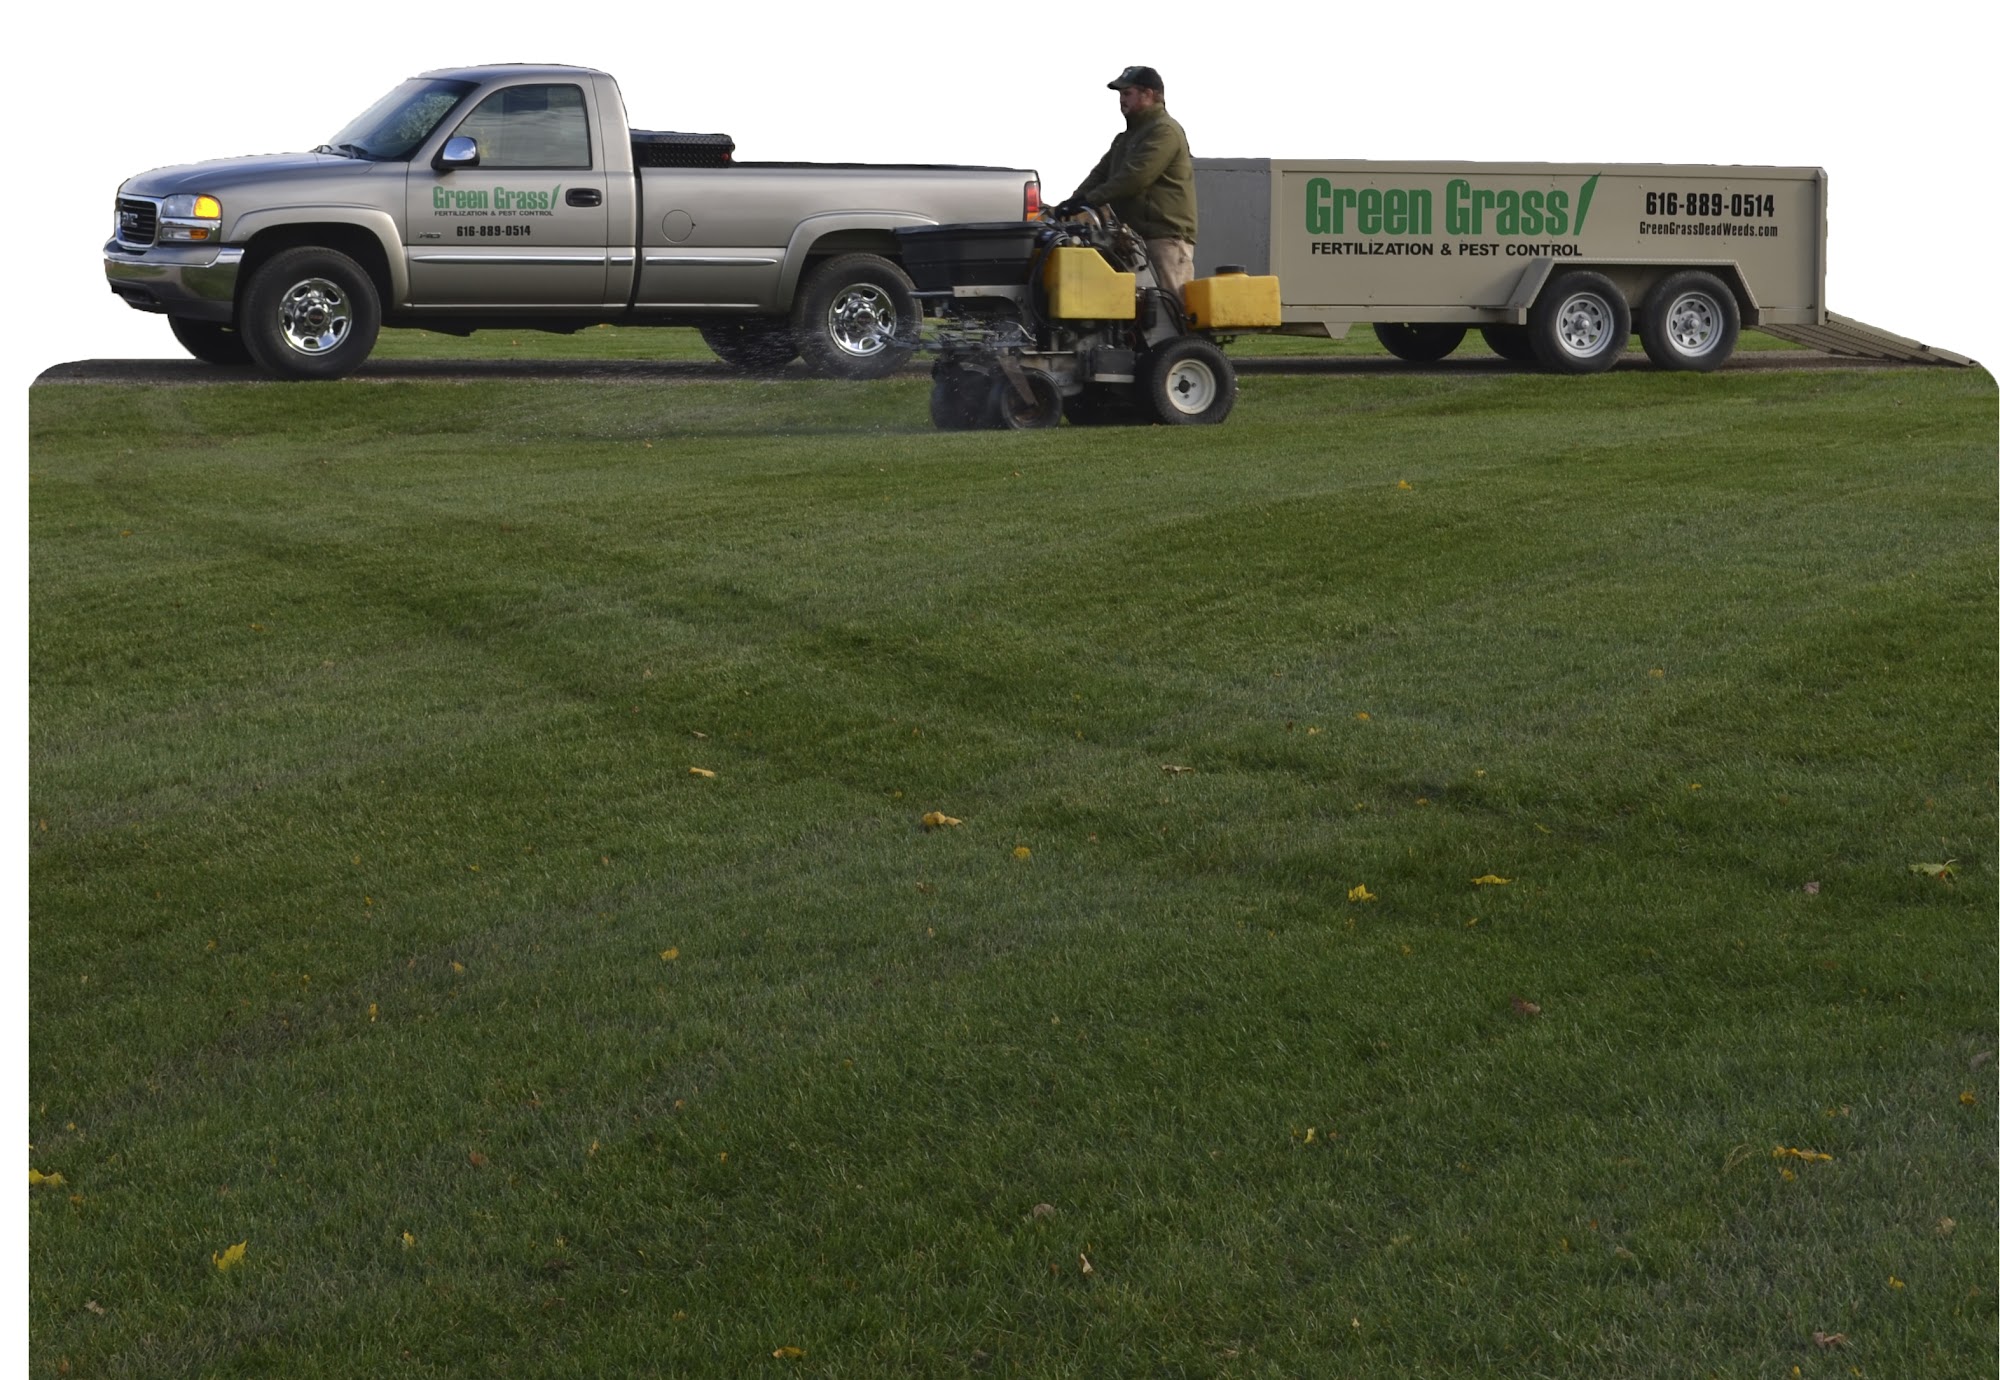 Green Grass Fertilization & Pest Control 8822 Kraft Ave SE, Caledonia Michigan 49316